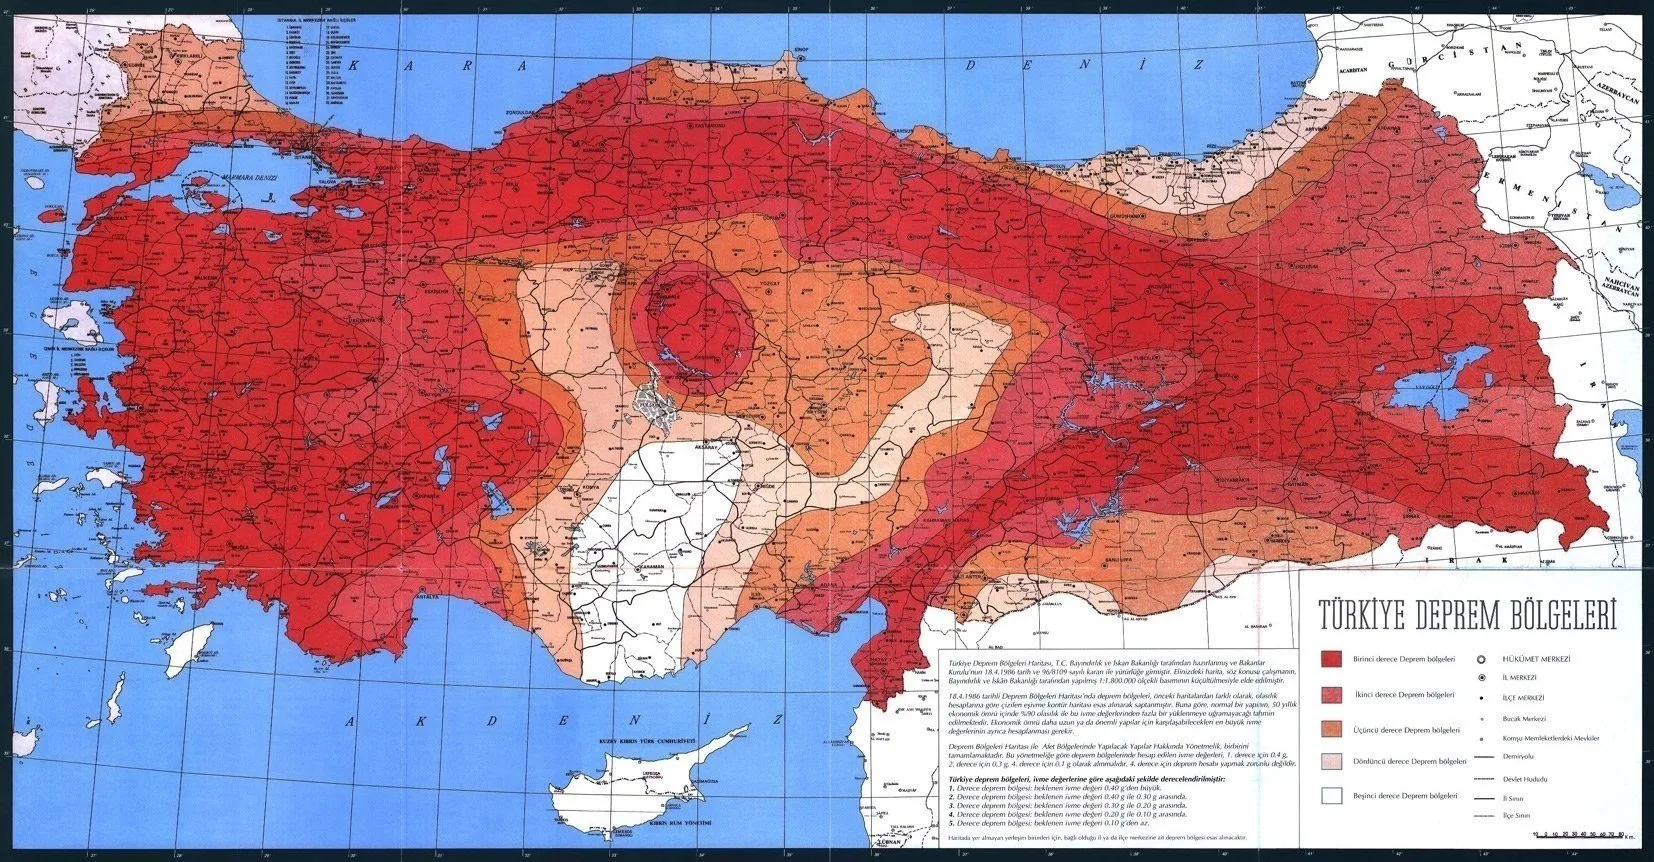 0x0-kuzey-anadolu-fay-hatti-haritasi-2023-turkiye-deprem-risk-haritasi-ile-kuzey-anadolu-fay-hatti-uzerindeki-ille-1677215677491.webp